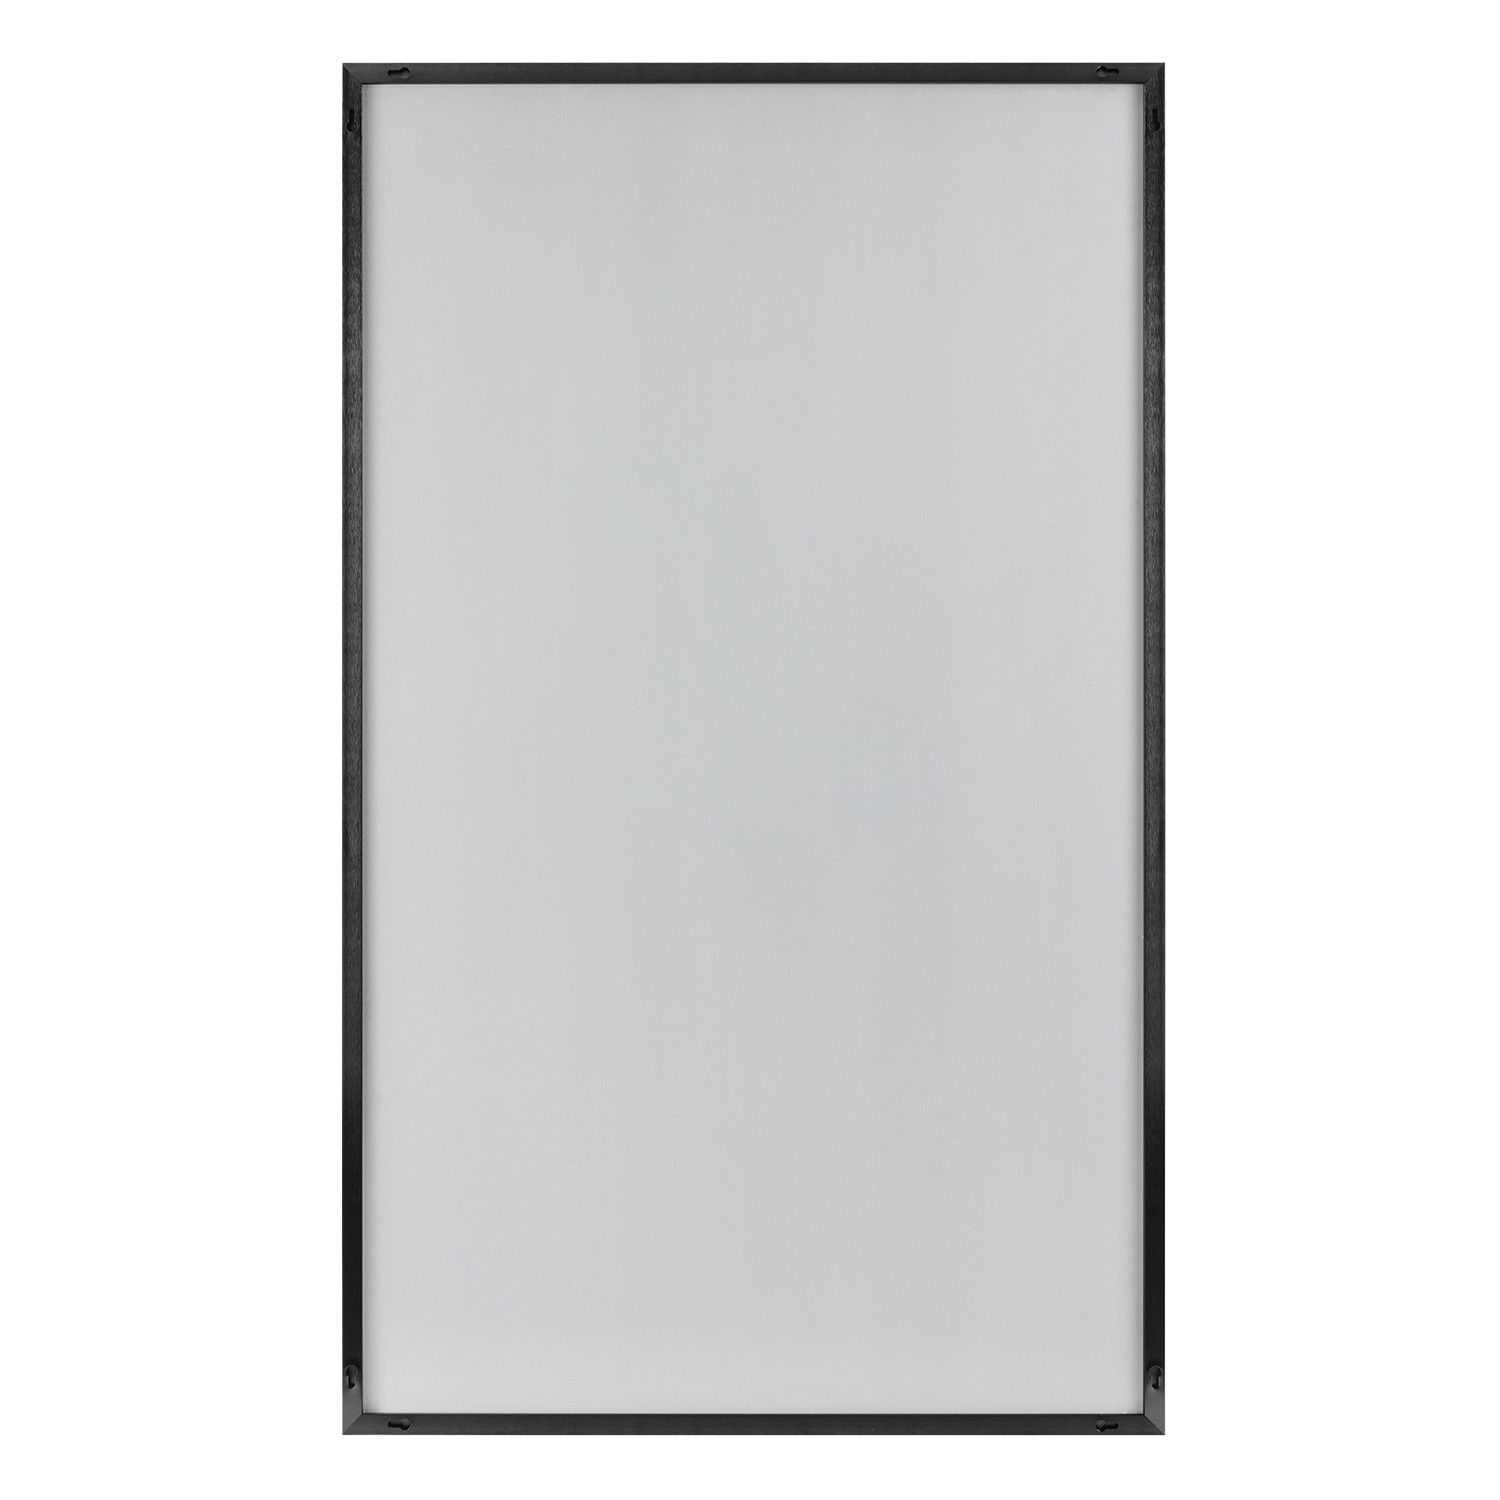 Jumbo Minimal Black Bathroom Vanity Mirror-397383-1